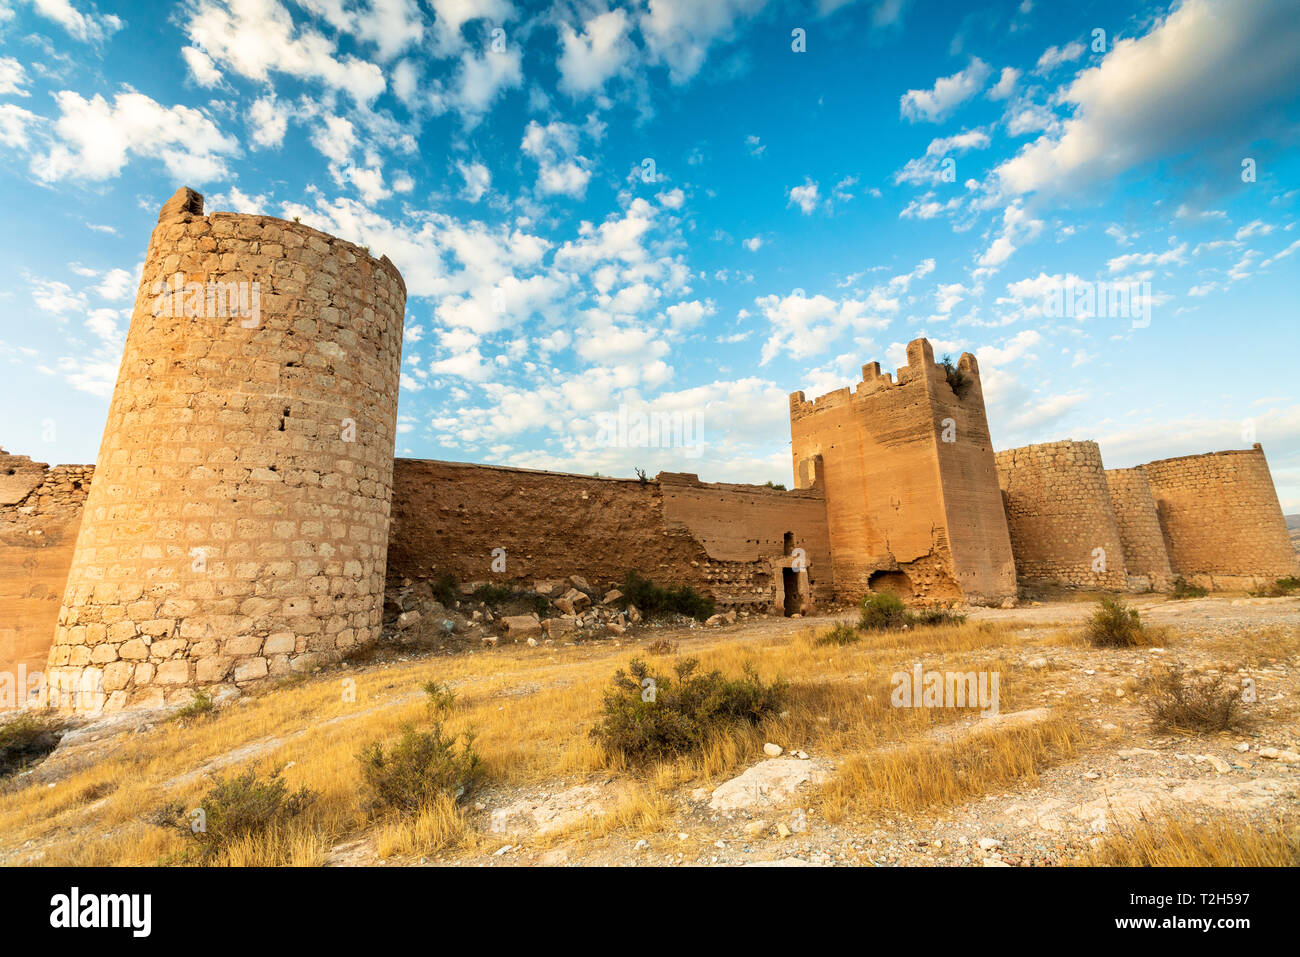 Alcazaba of Malaga walls in Spain, Europe Stock Photo